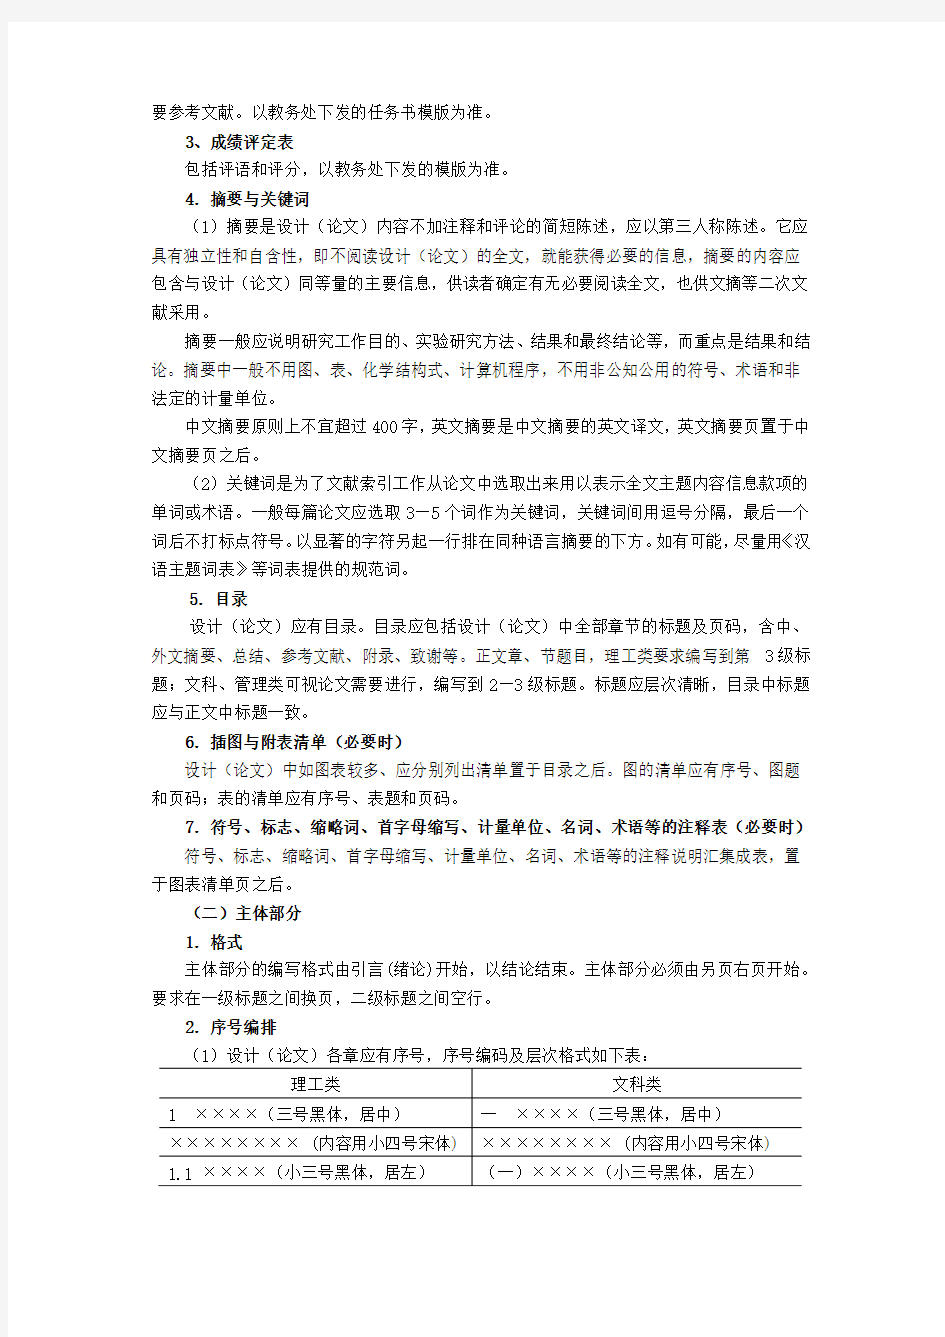 河南城建学院本科毕业设计(论文)撰写规范要求